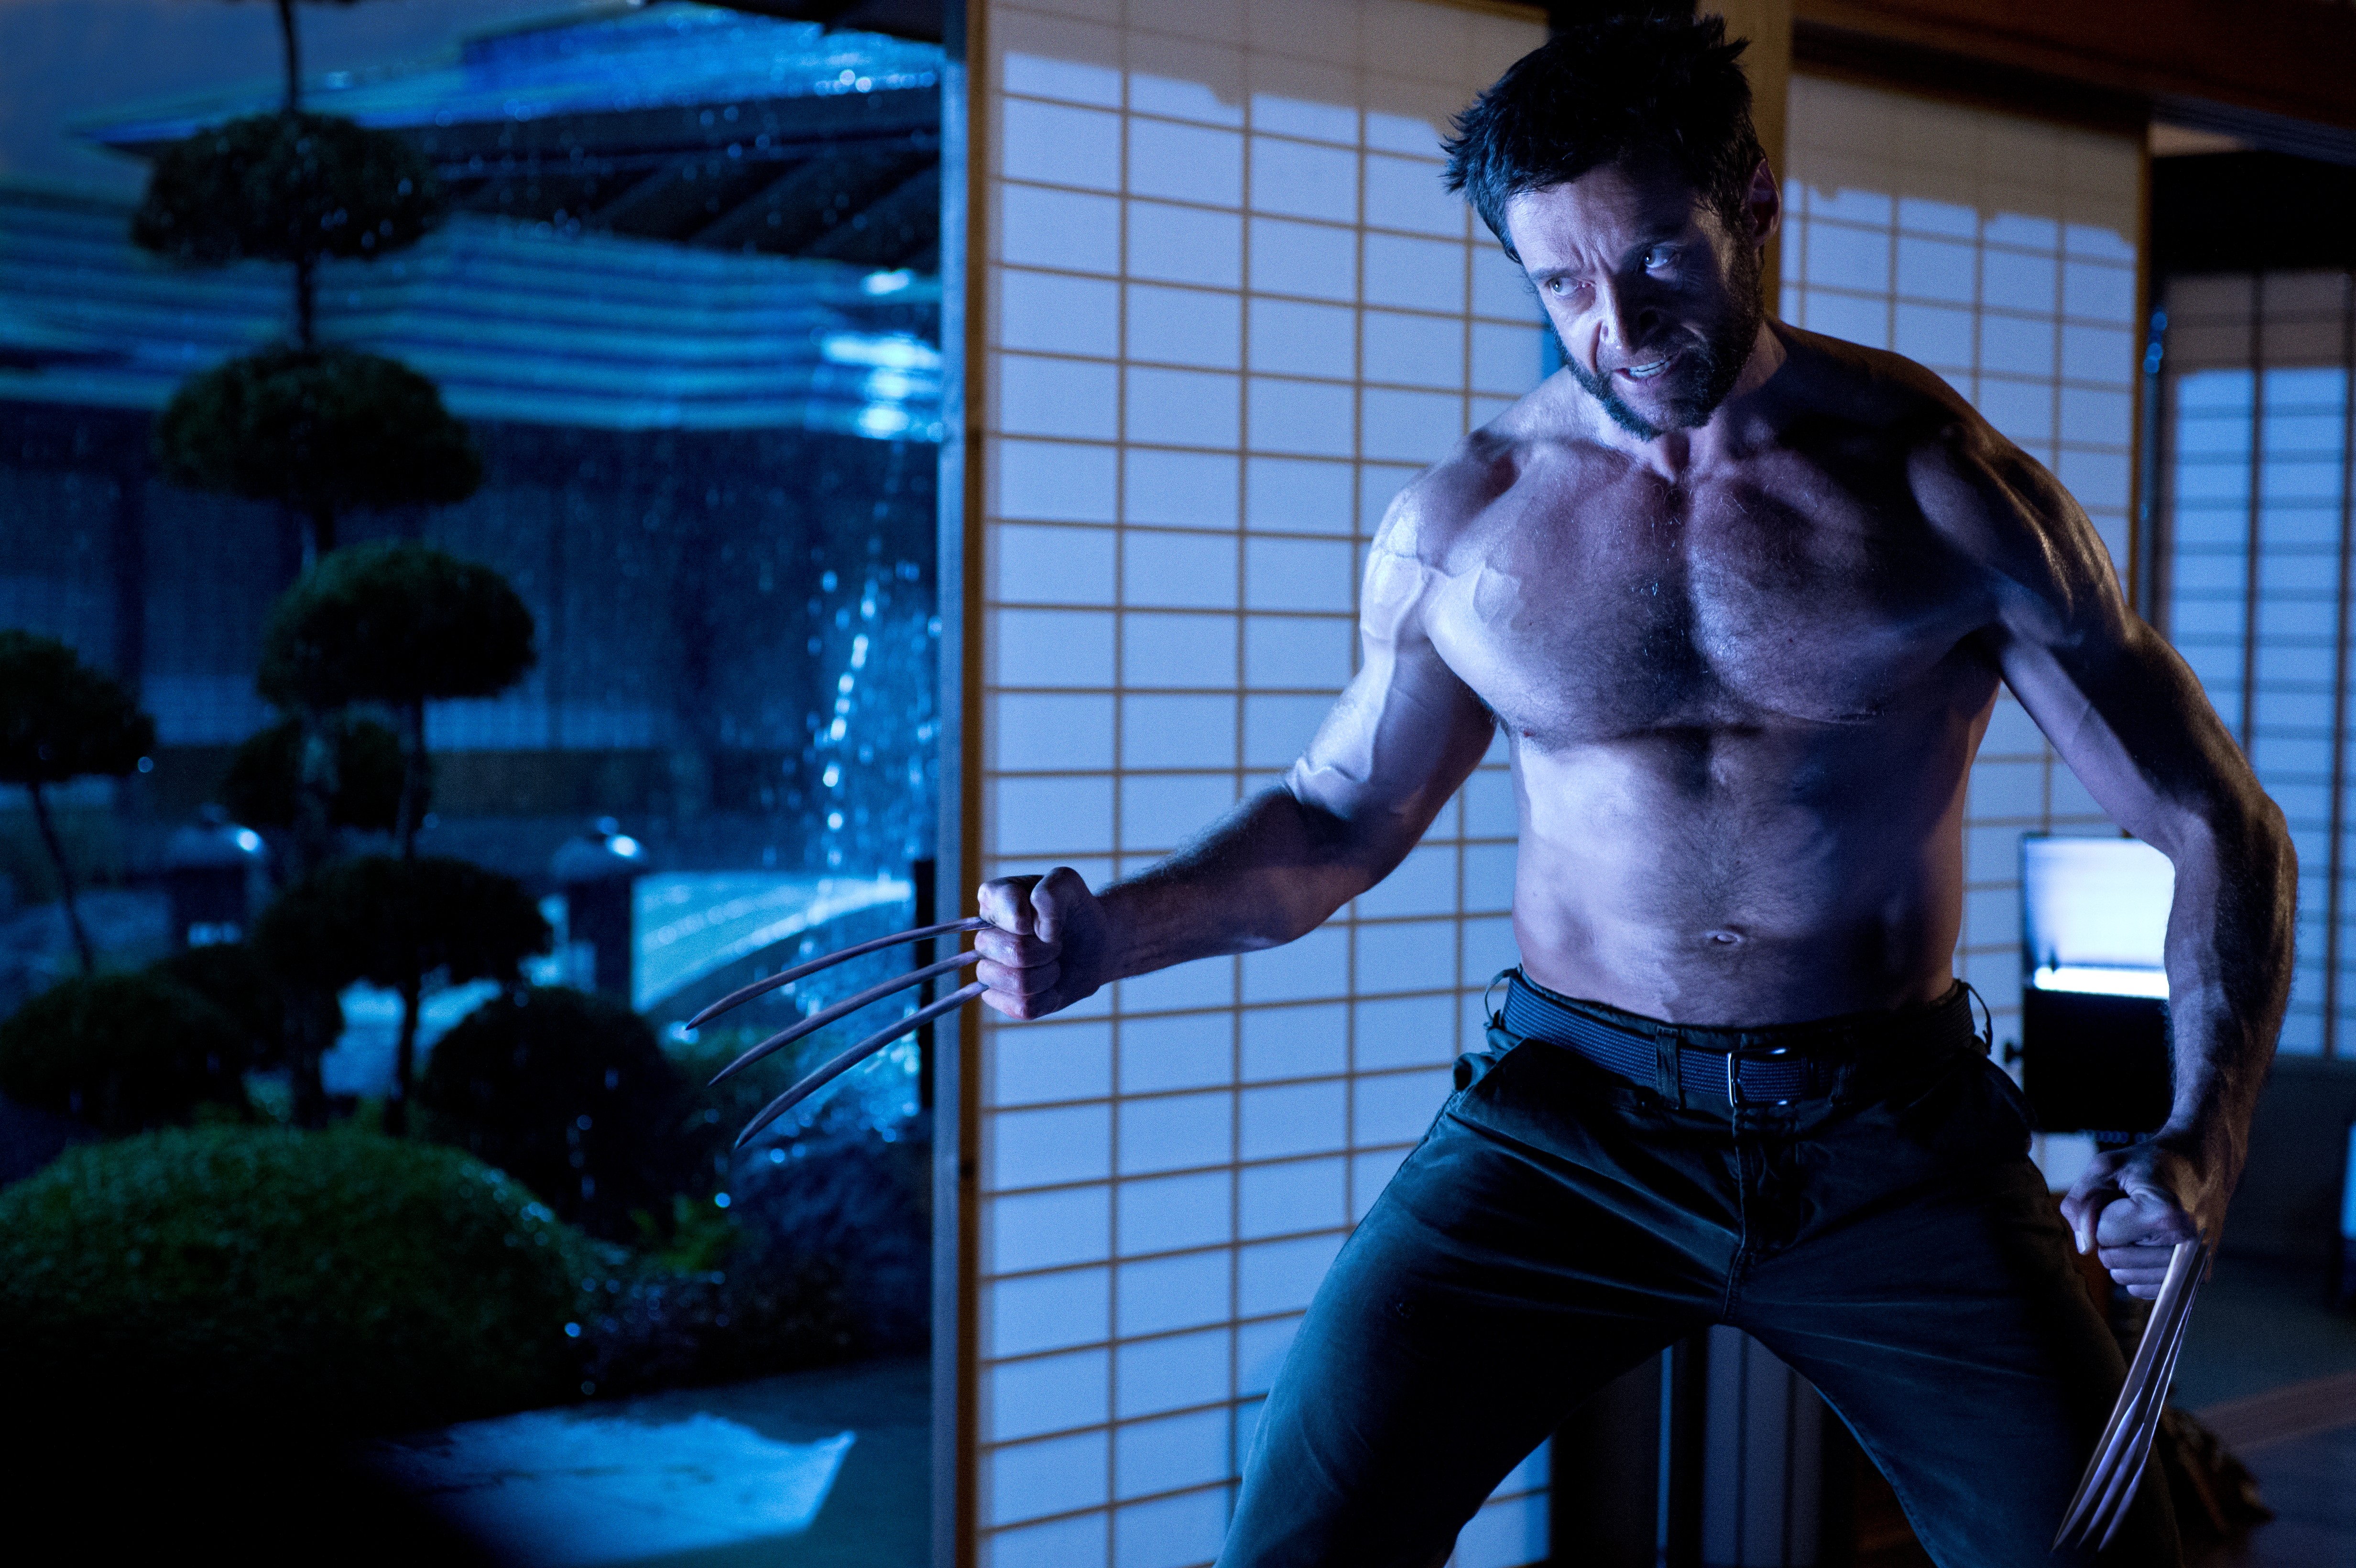 Hugh Jackman As Wolverine Movies